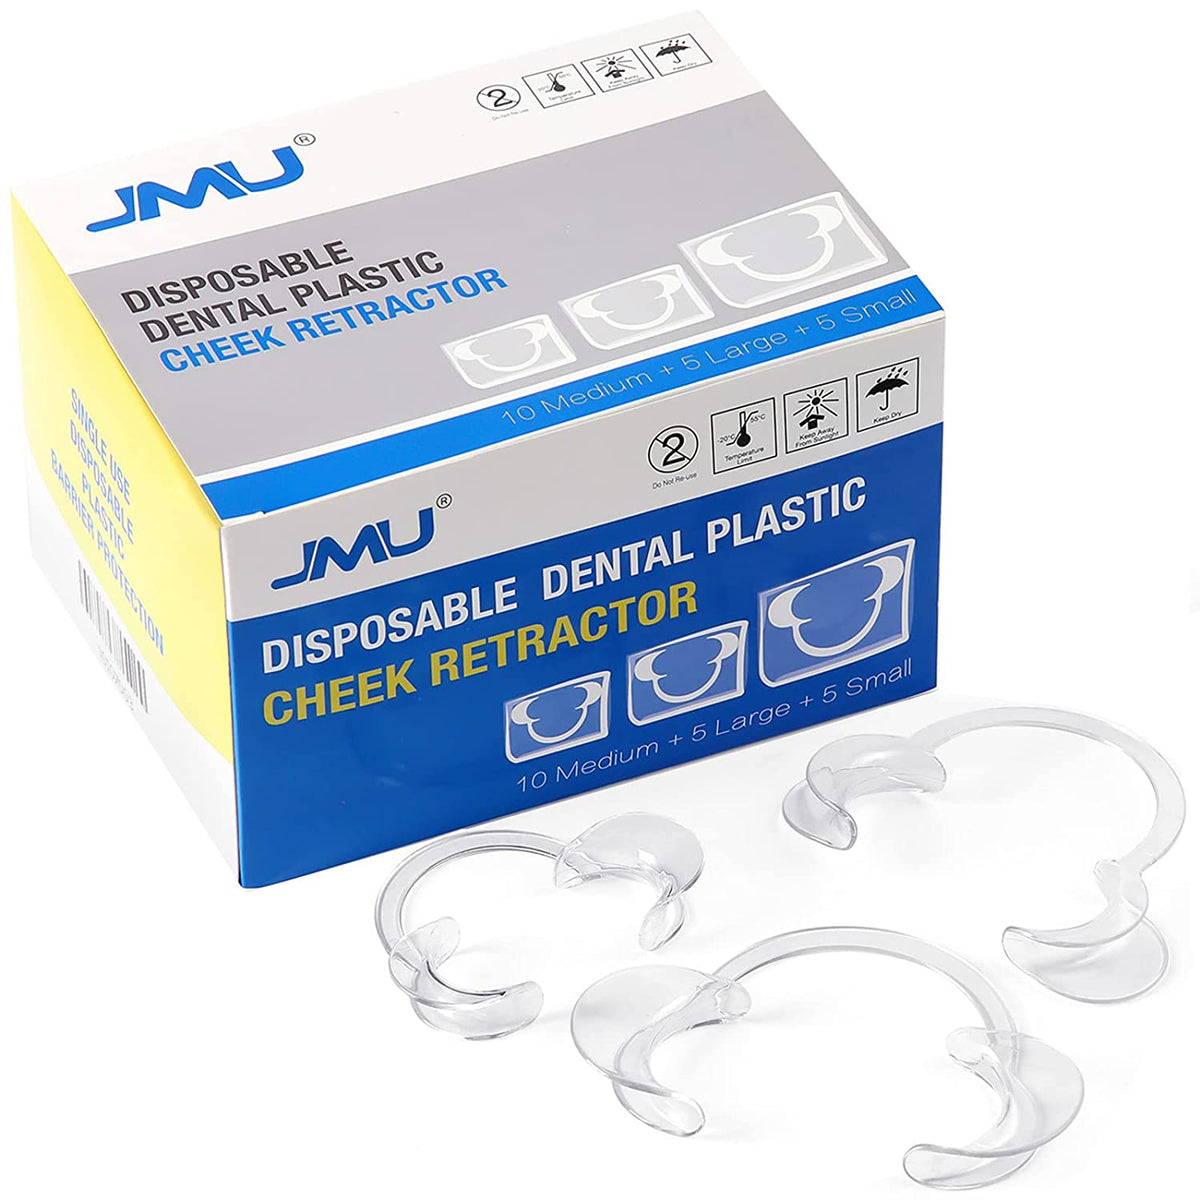 JMU Autoclavable Dental Bib Holder Clips 10/Pack — JMU Dental